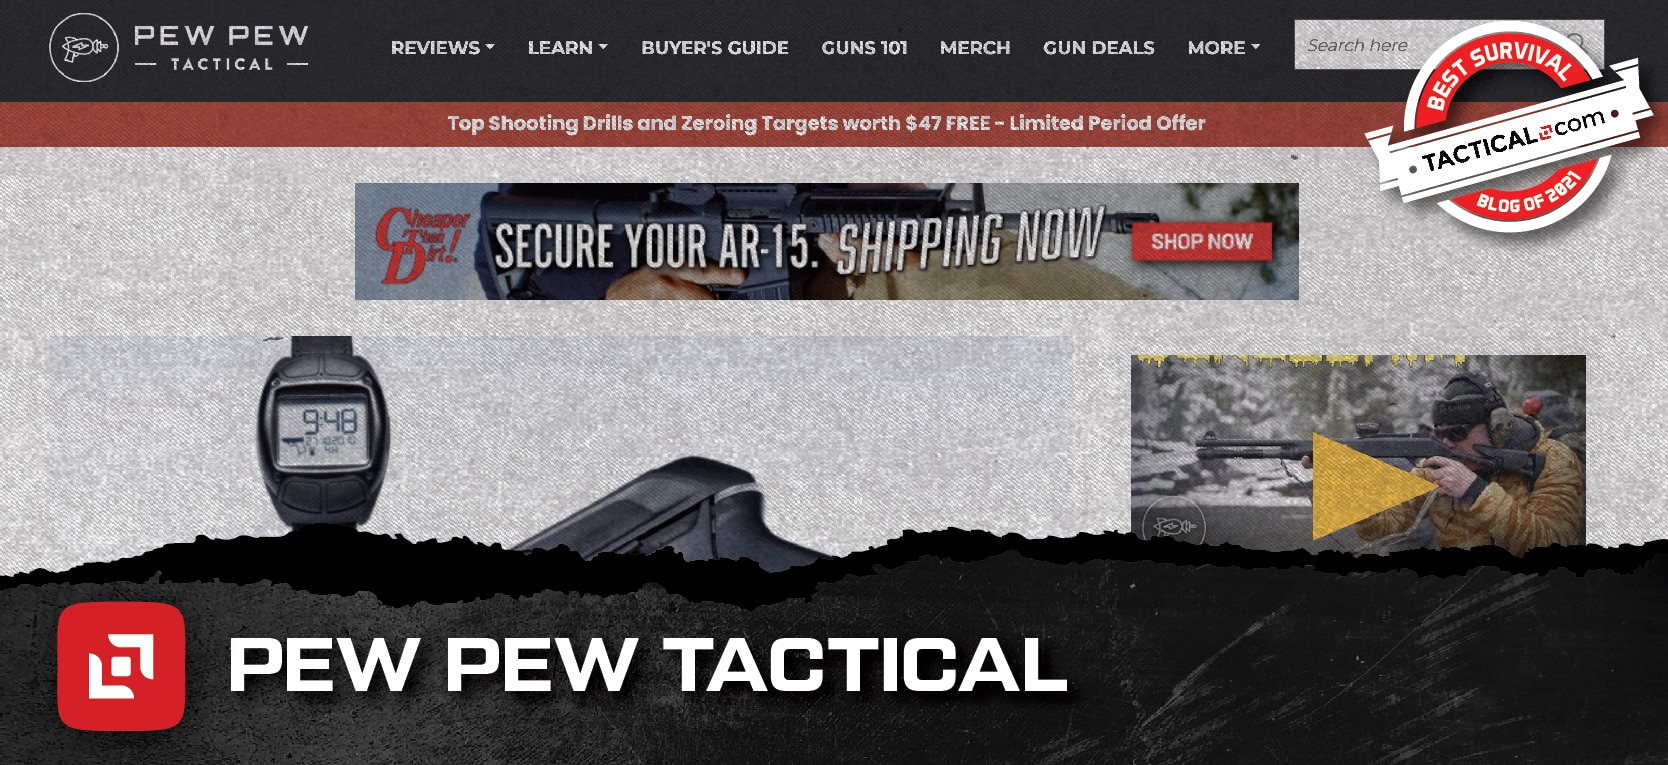 Pew Pew Tactical homepage